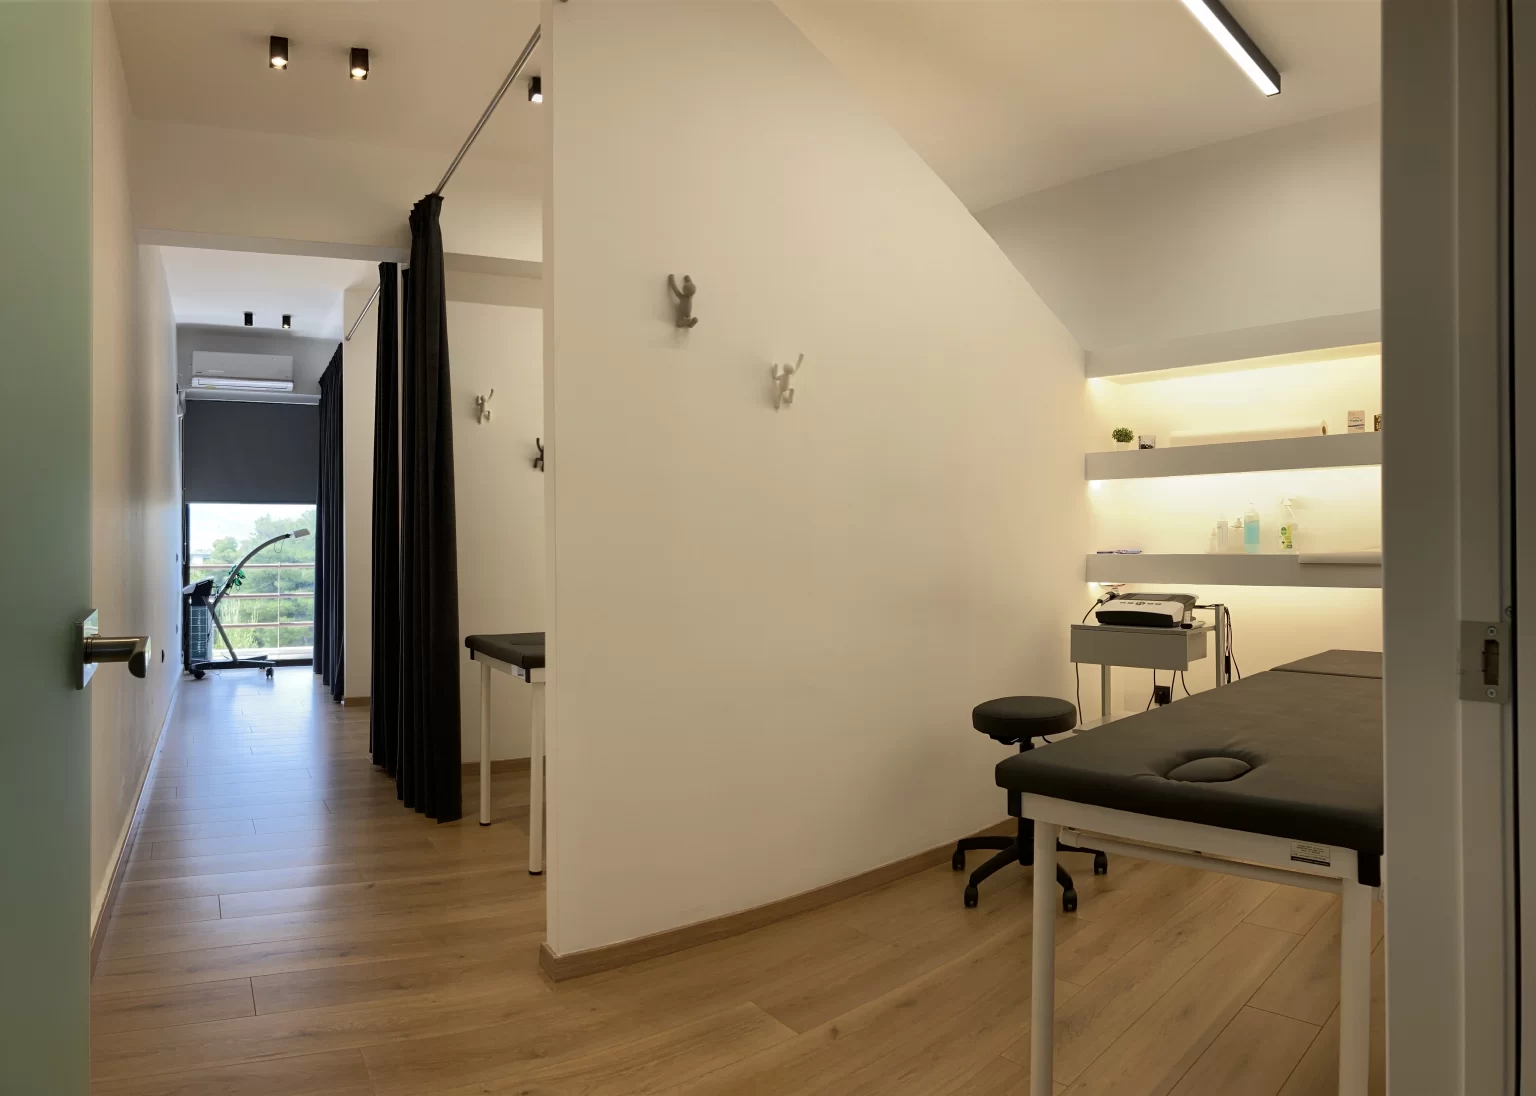 Ο χώρος μας: Αίθουσες Θεραπείας του κέντρου Προηγμένη Φυσικοθεραπεία Μαυροπάνος στην Αγία Παρασκευή